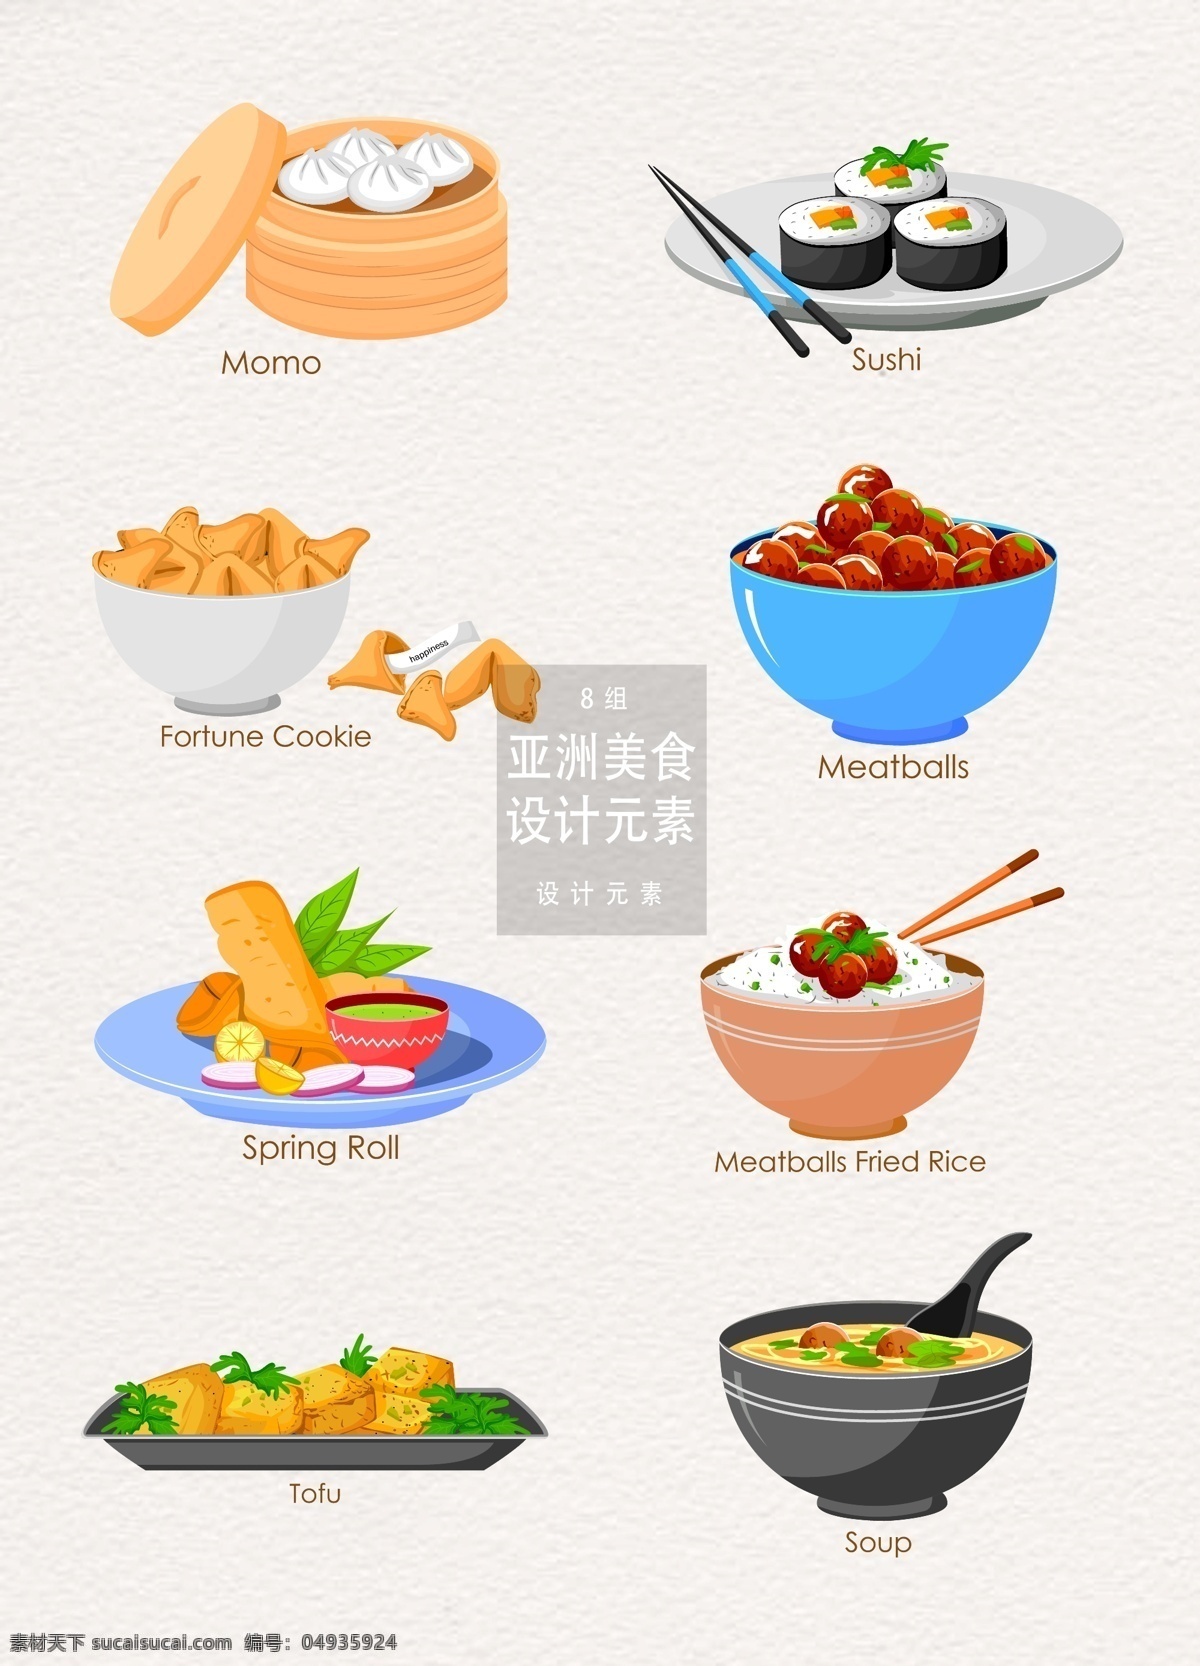 亚洲 中国 食物 插画 元素 设计元素 蒸笼 包子 寿司 米饭 食物插画 中国食物 亚洲食物 汤